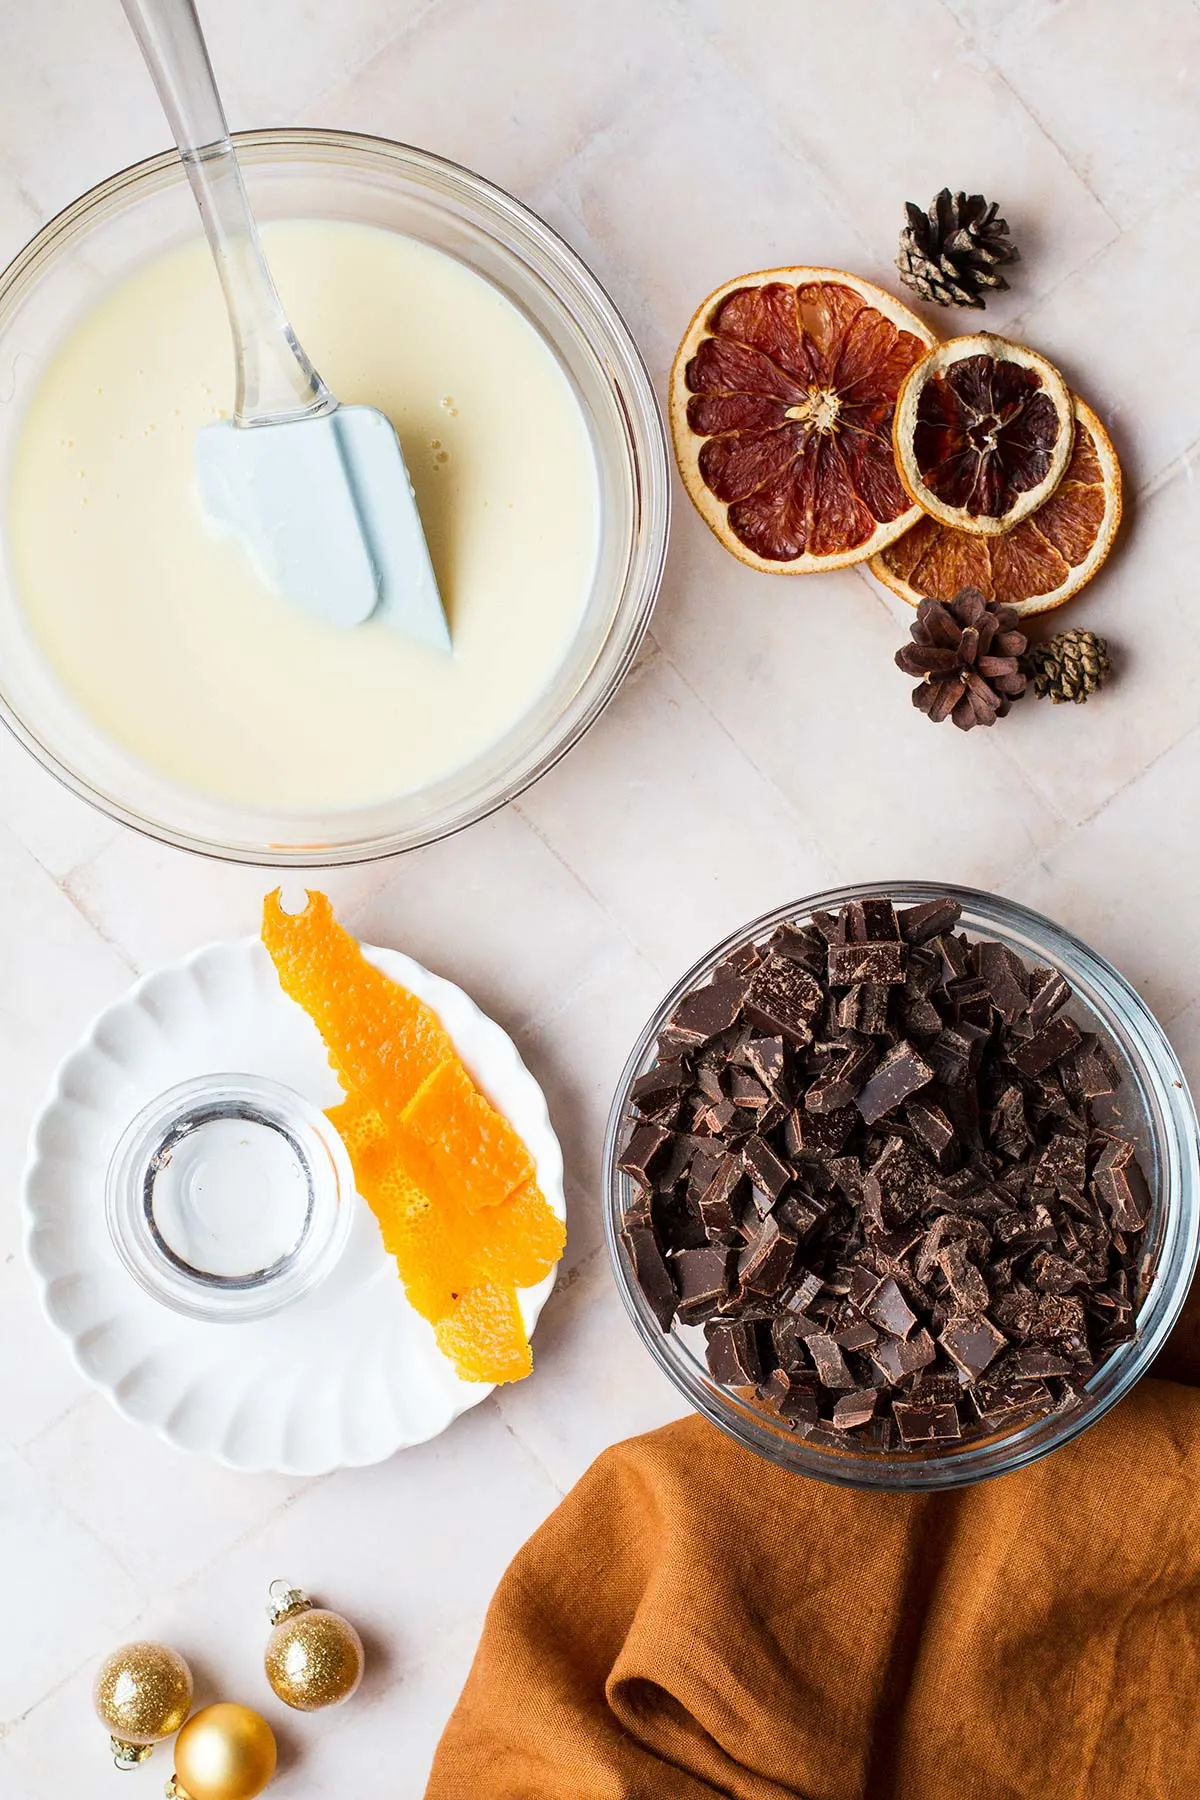 Ingredients to make orange chocolate fudge.